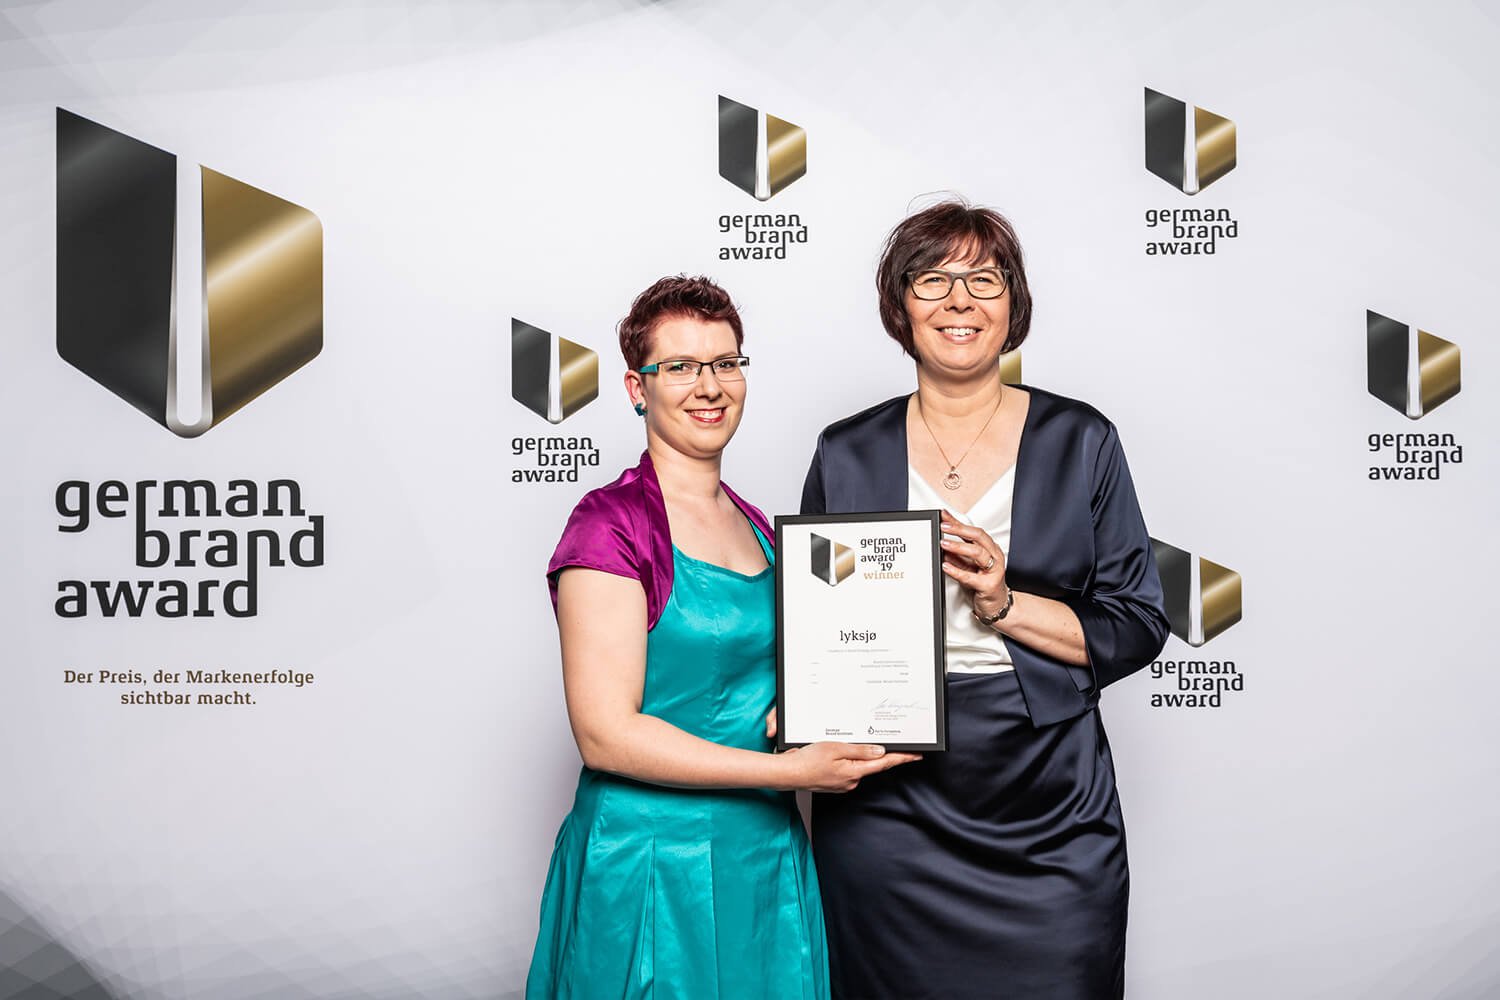 FarbFaible gewinnt den German Brand Award 2019 in der Kategorie Brand Communication – Storytelling und Content Marketing